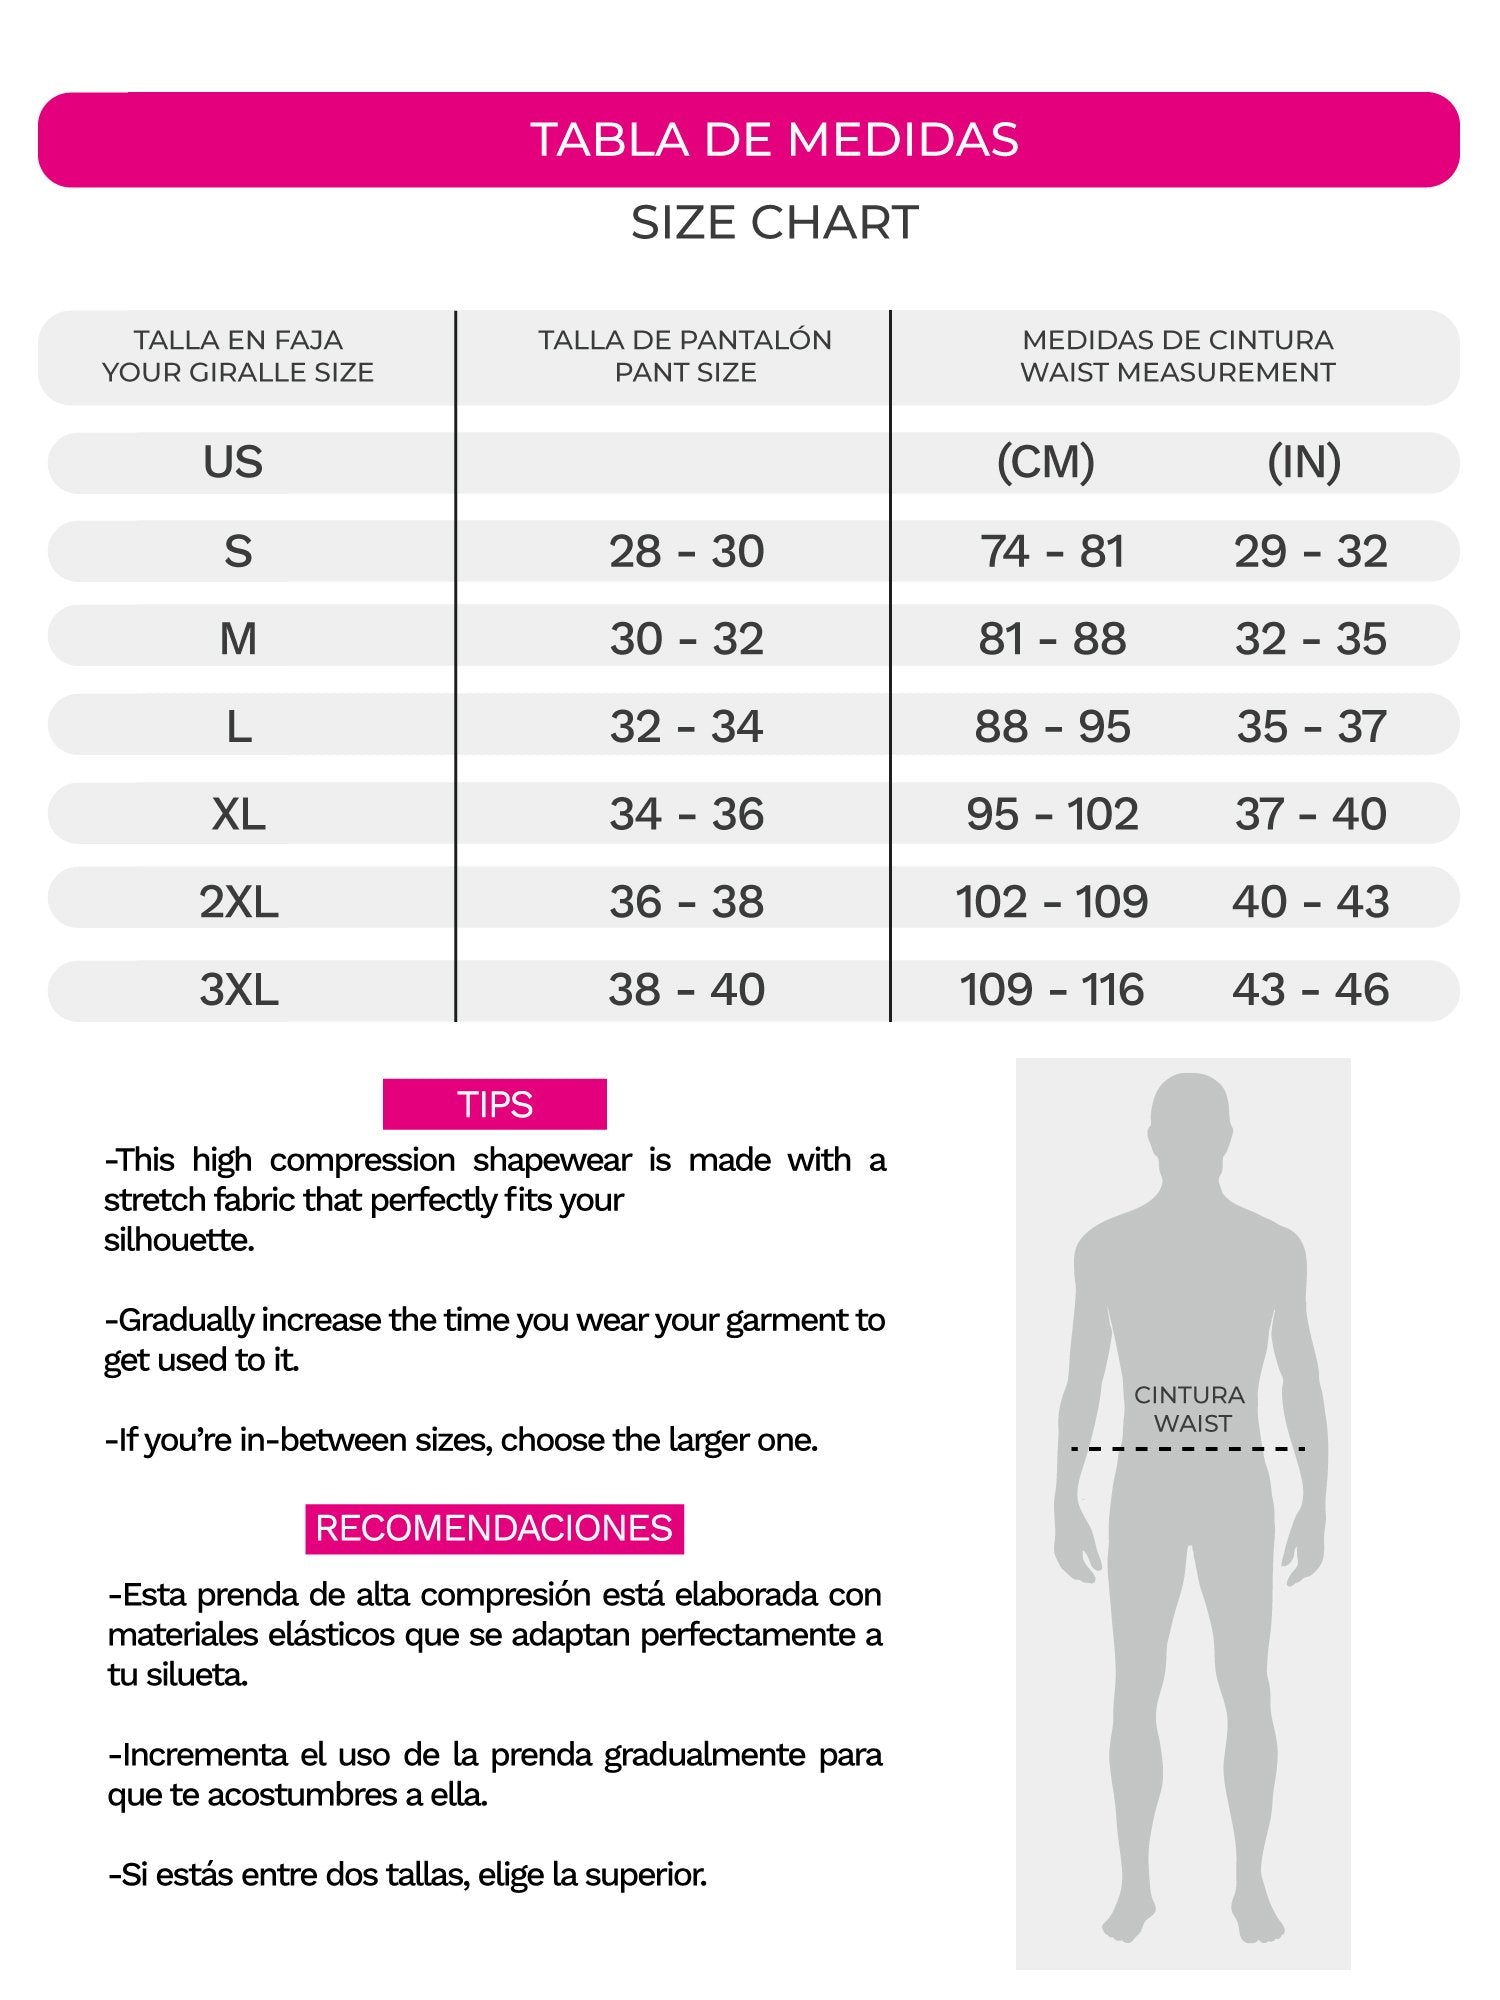 Fajas Colombianas Para Hombres Control Body Shaper Compresión Camisetas  Chaleco